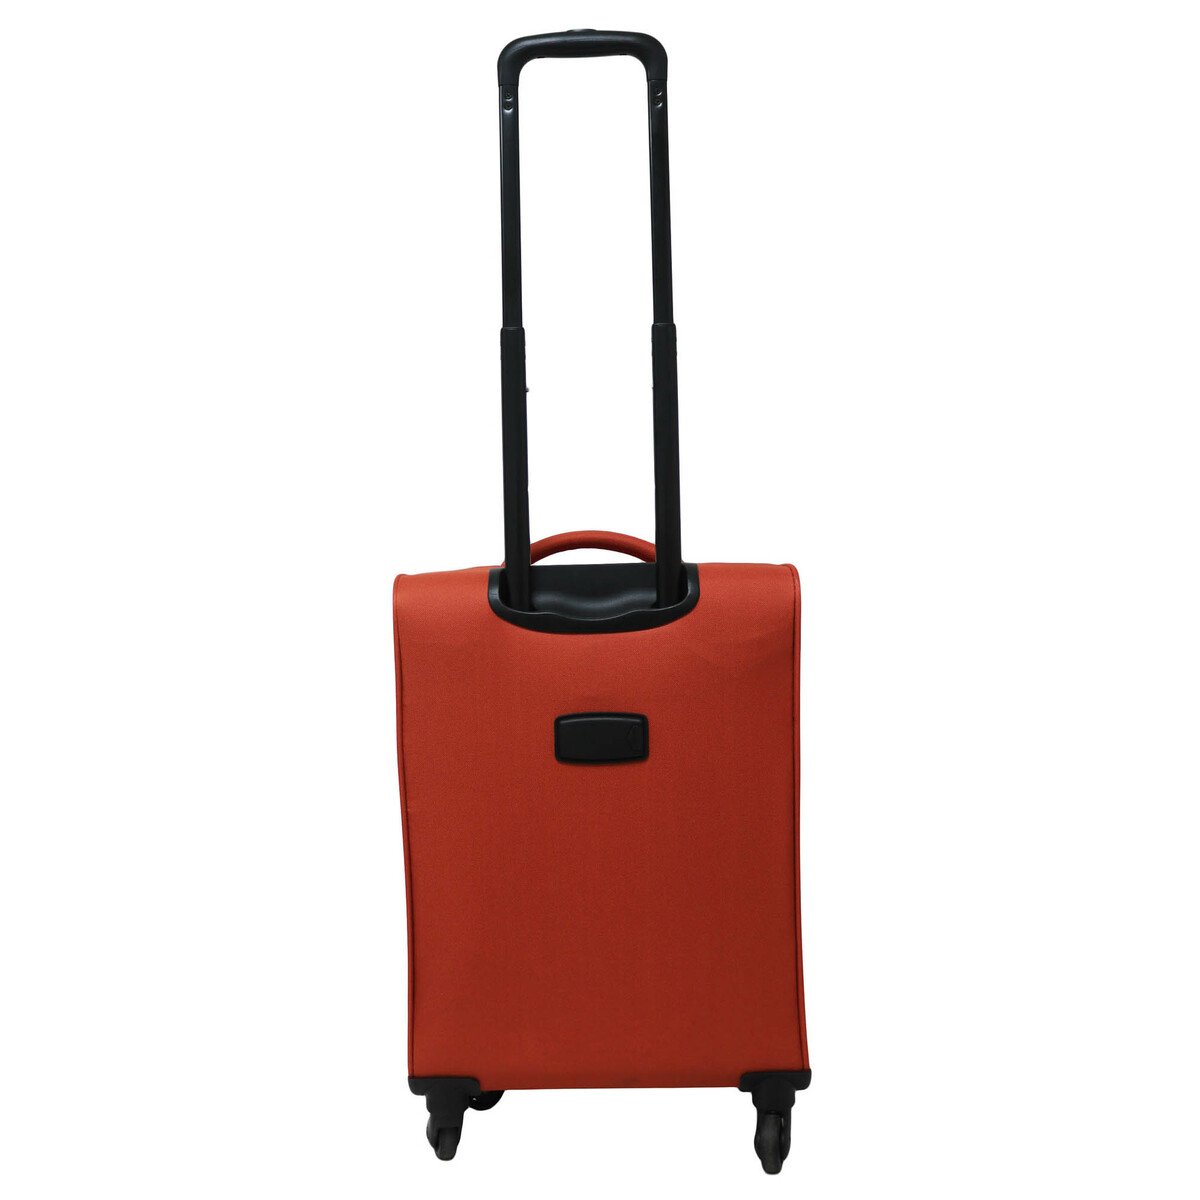 Wagon-R Soft Trolley Bag 19-5001TC 26in